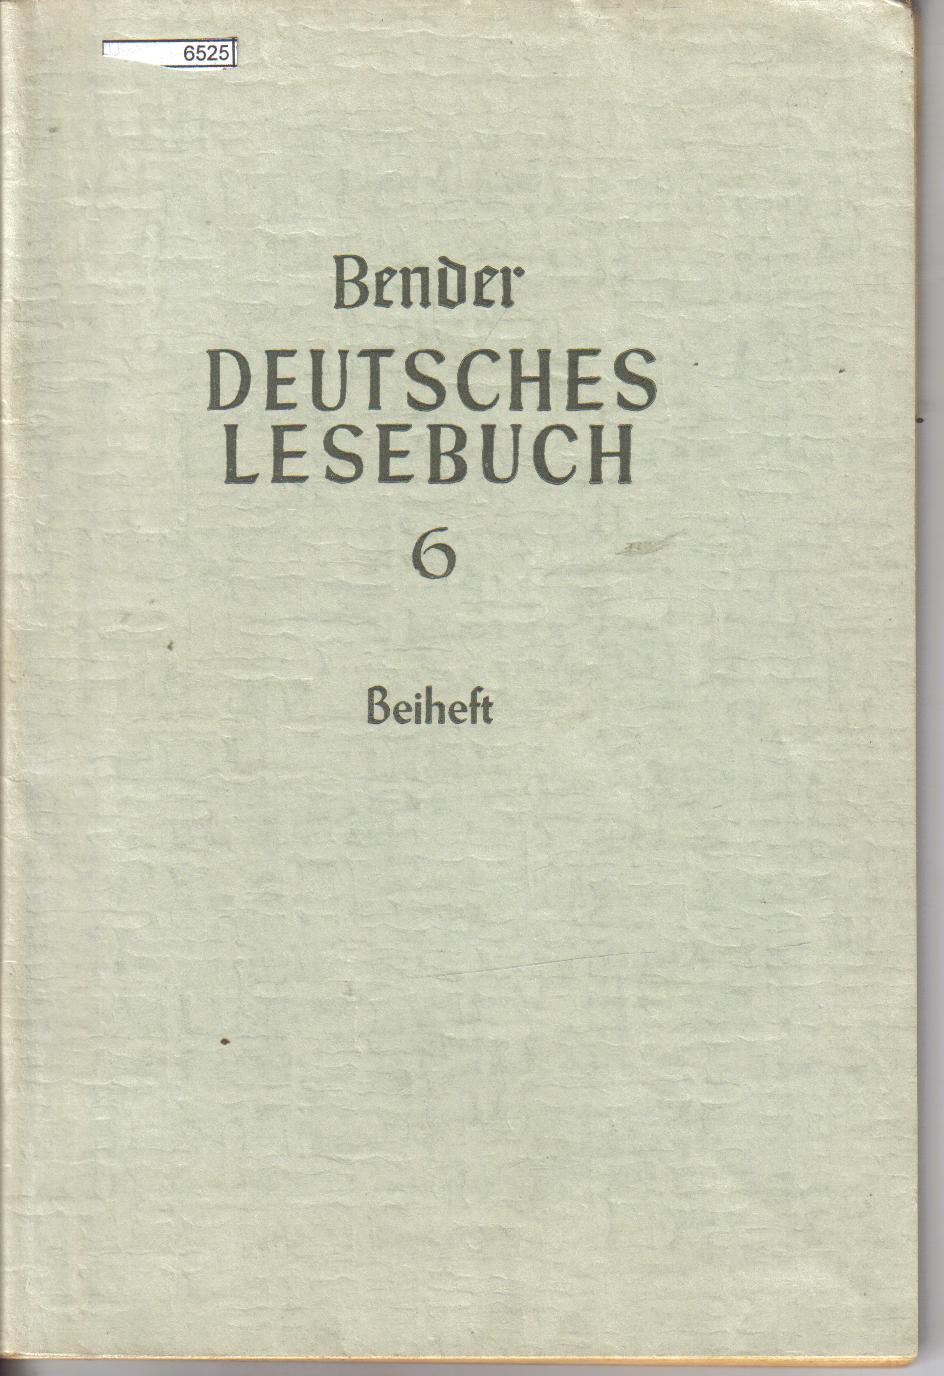 Deutsches Lesebuch 6  Beiheft Bender